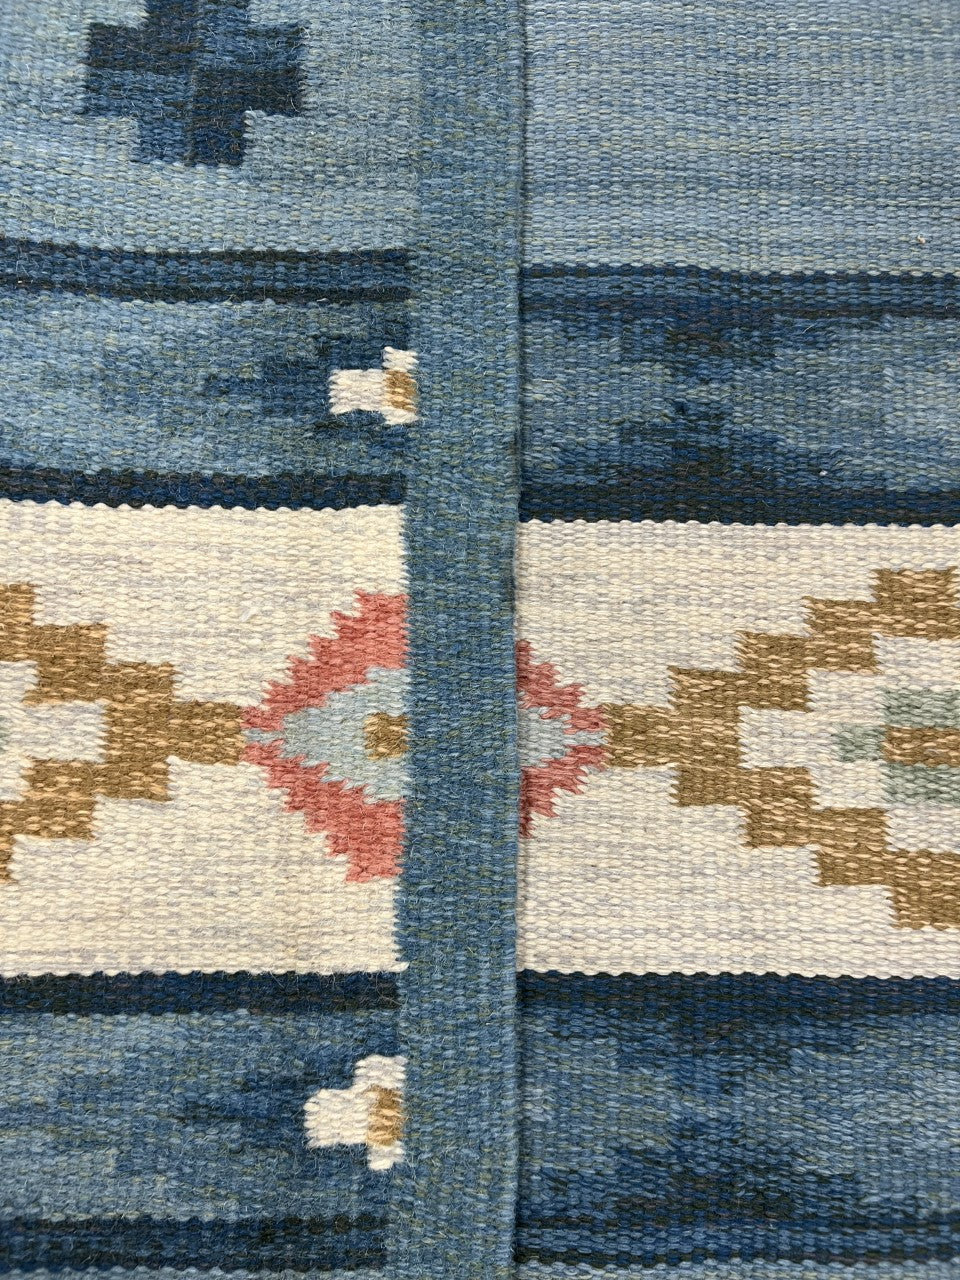 Amazing Swedish Kilim decorative rug - Hakiemie Rug Gallery